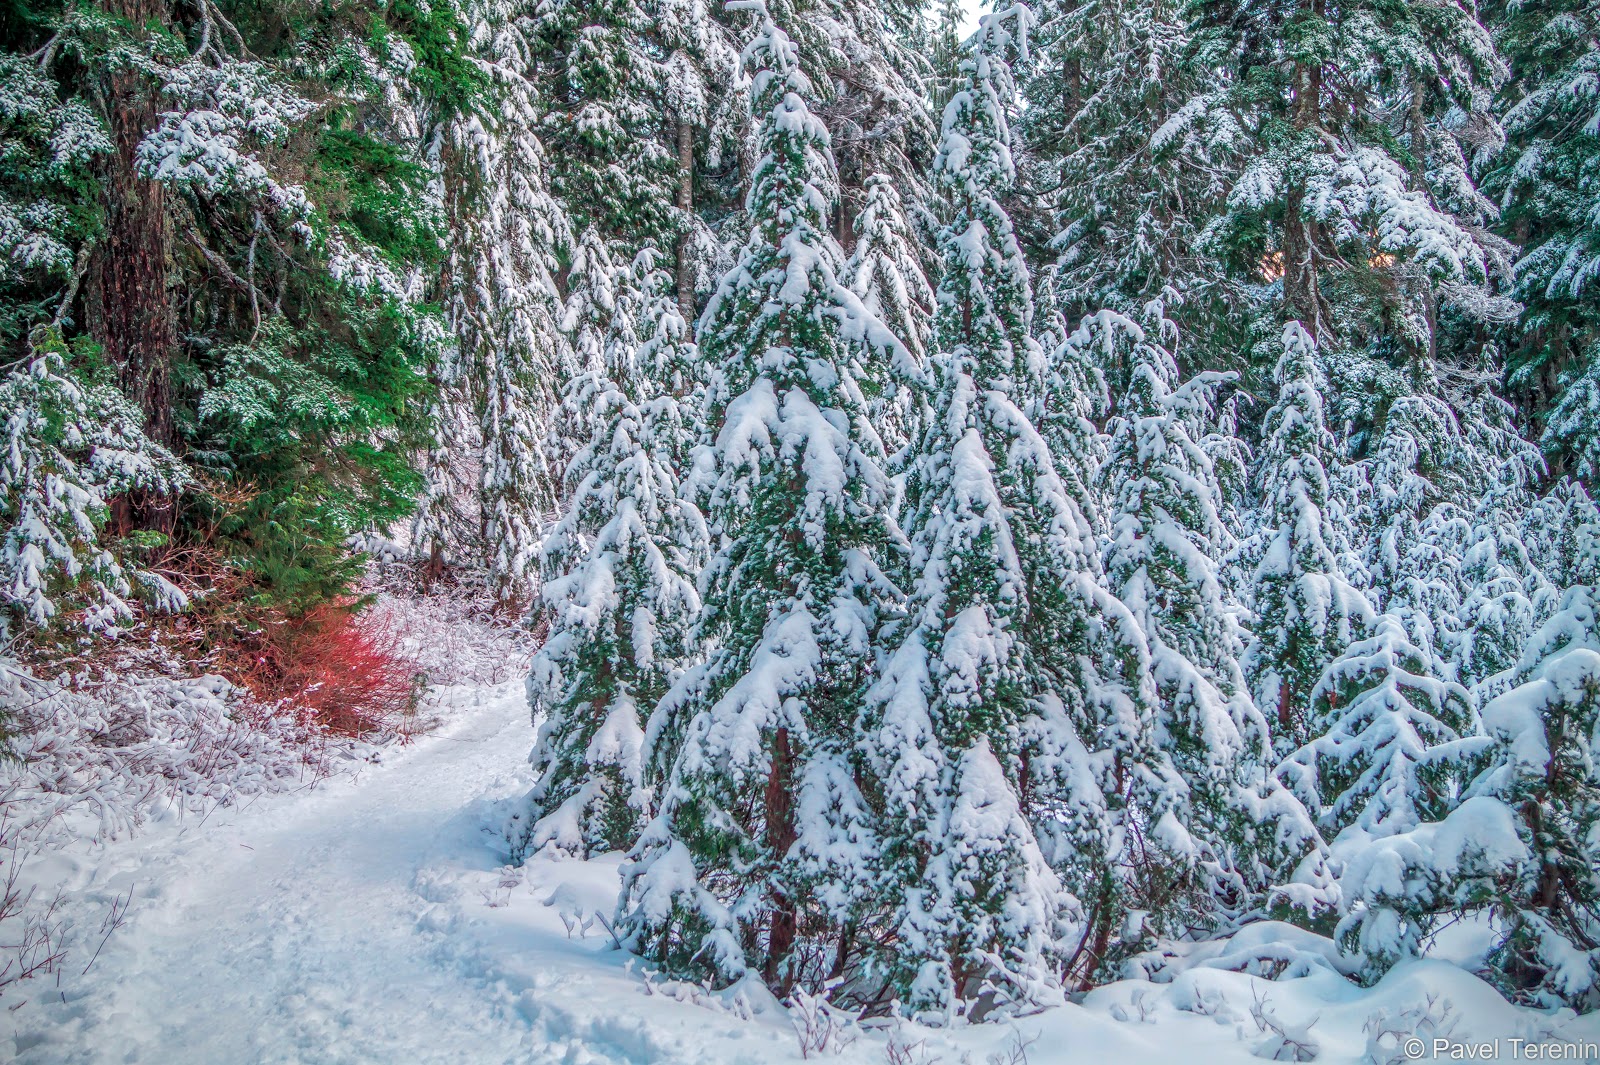  сказочный зимний лес